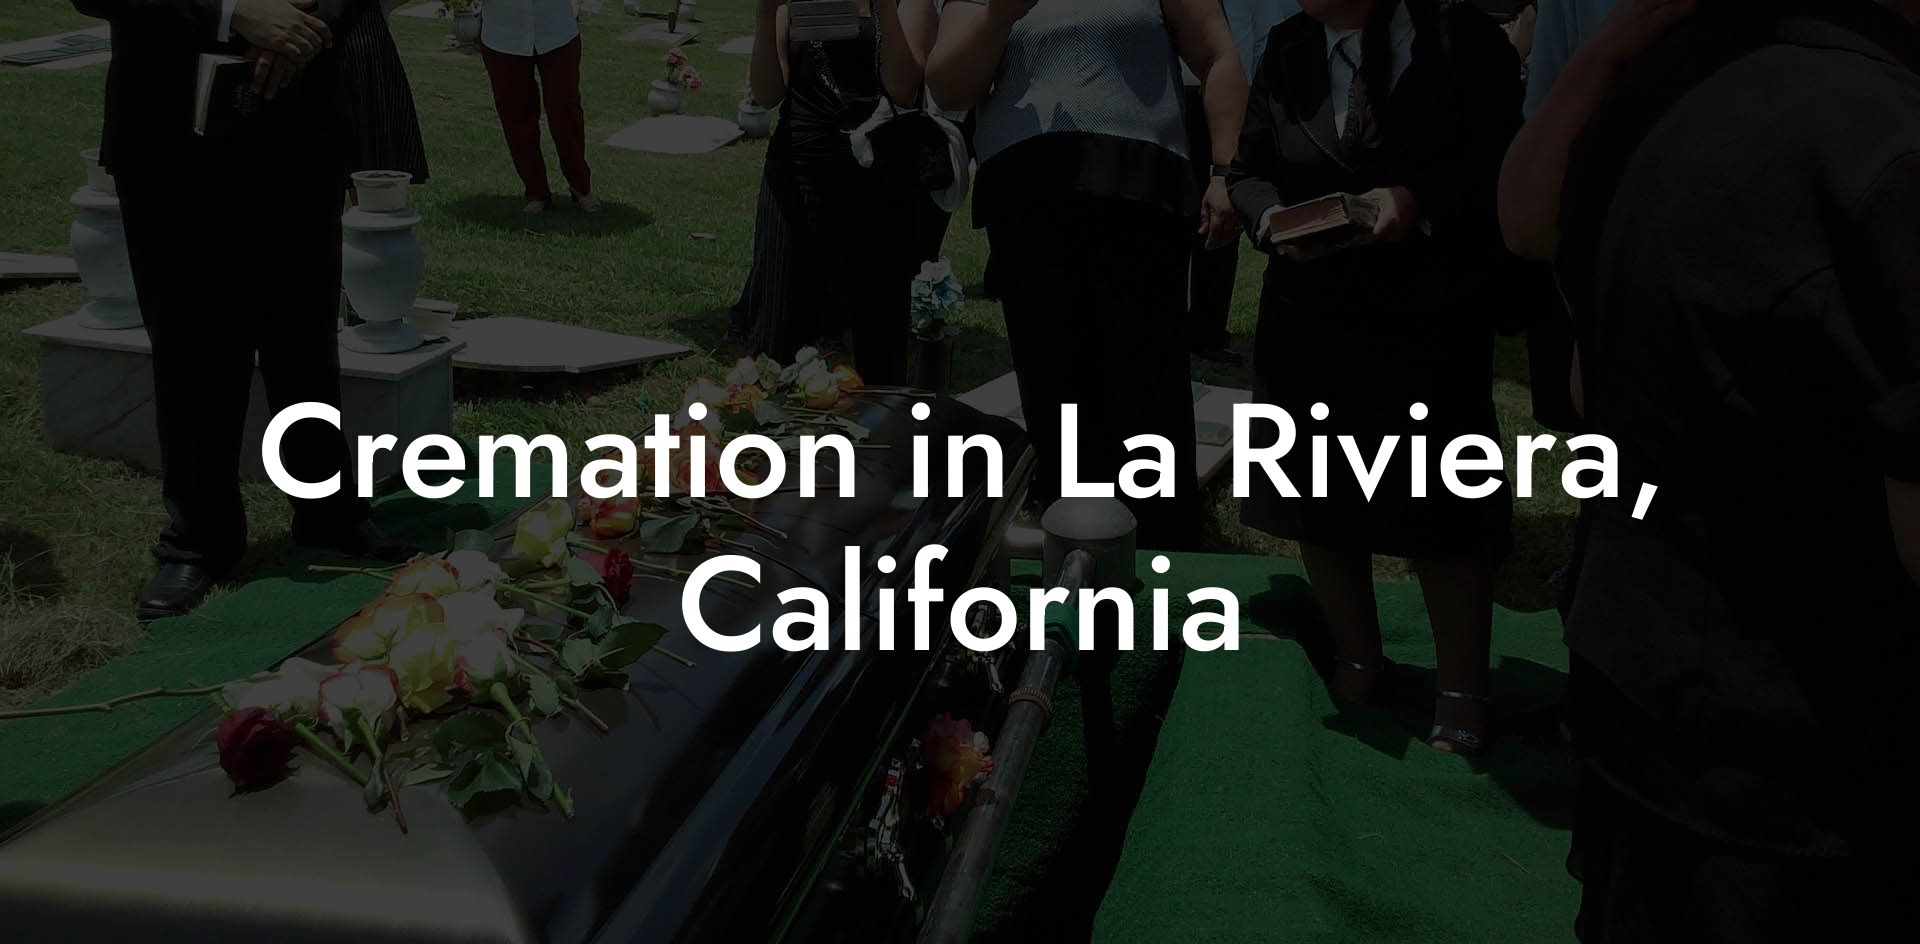 Cremation in La Riviera, California